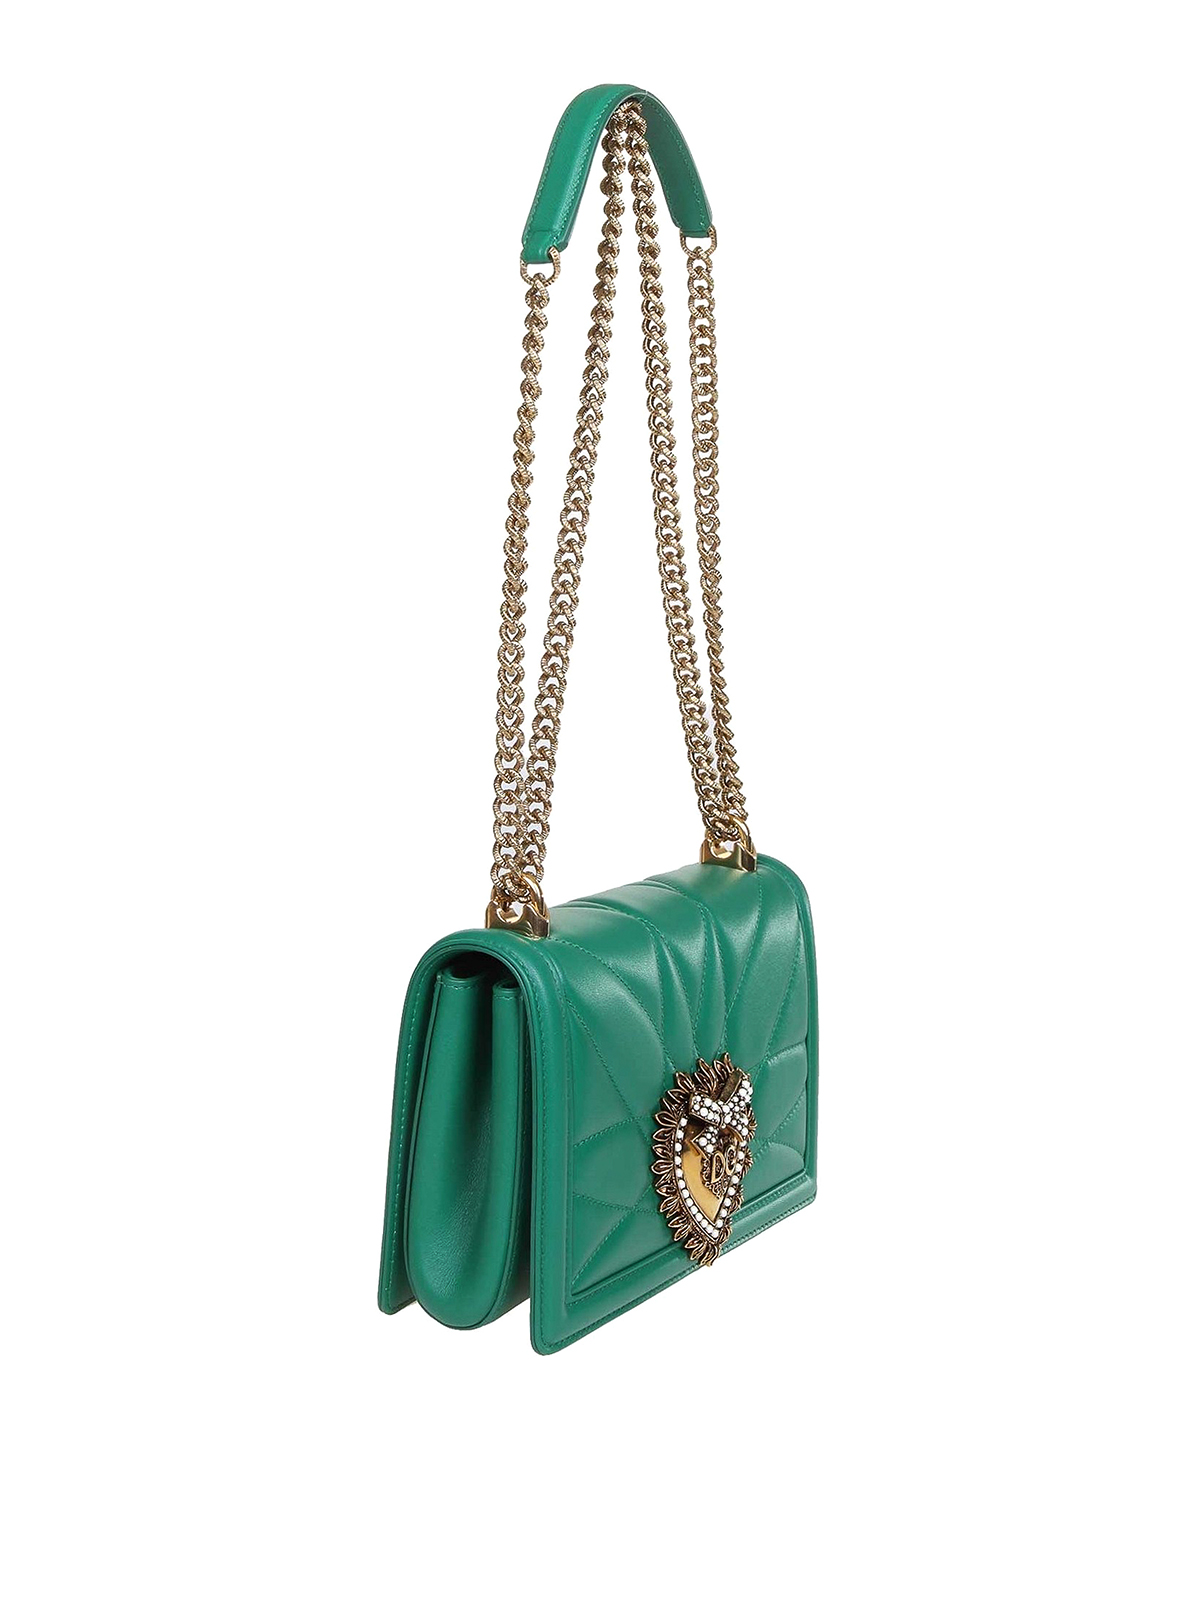 Dolce & Gabbana Small Satin Devotion Bag in Green